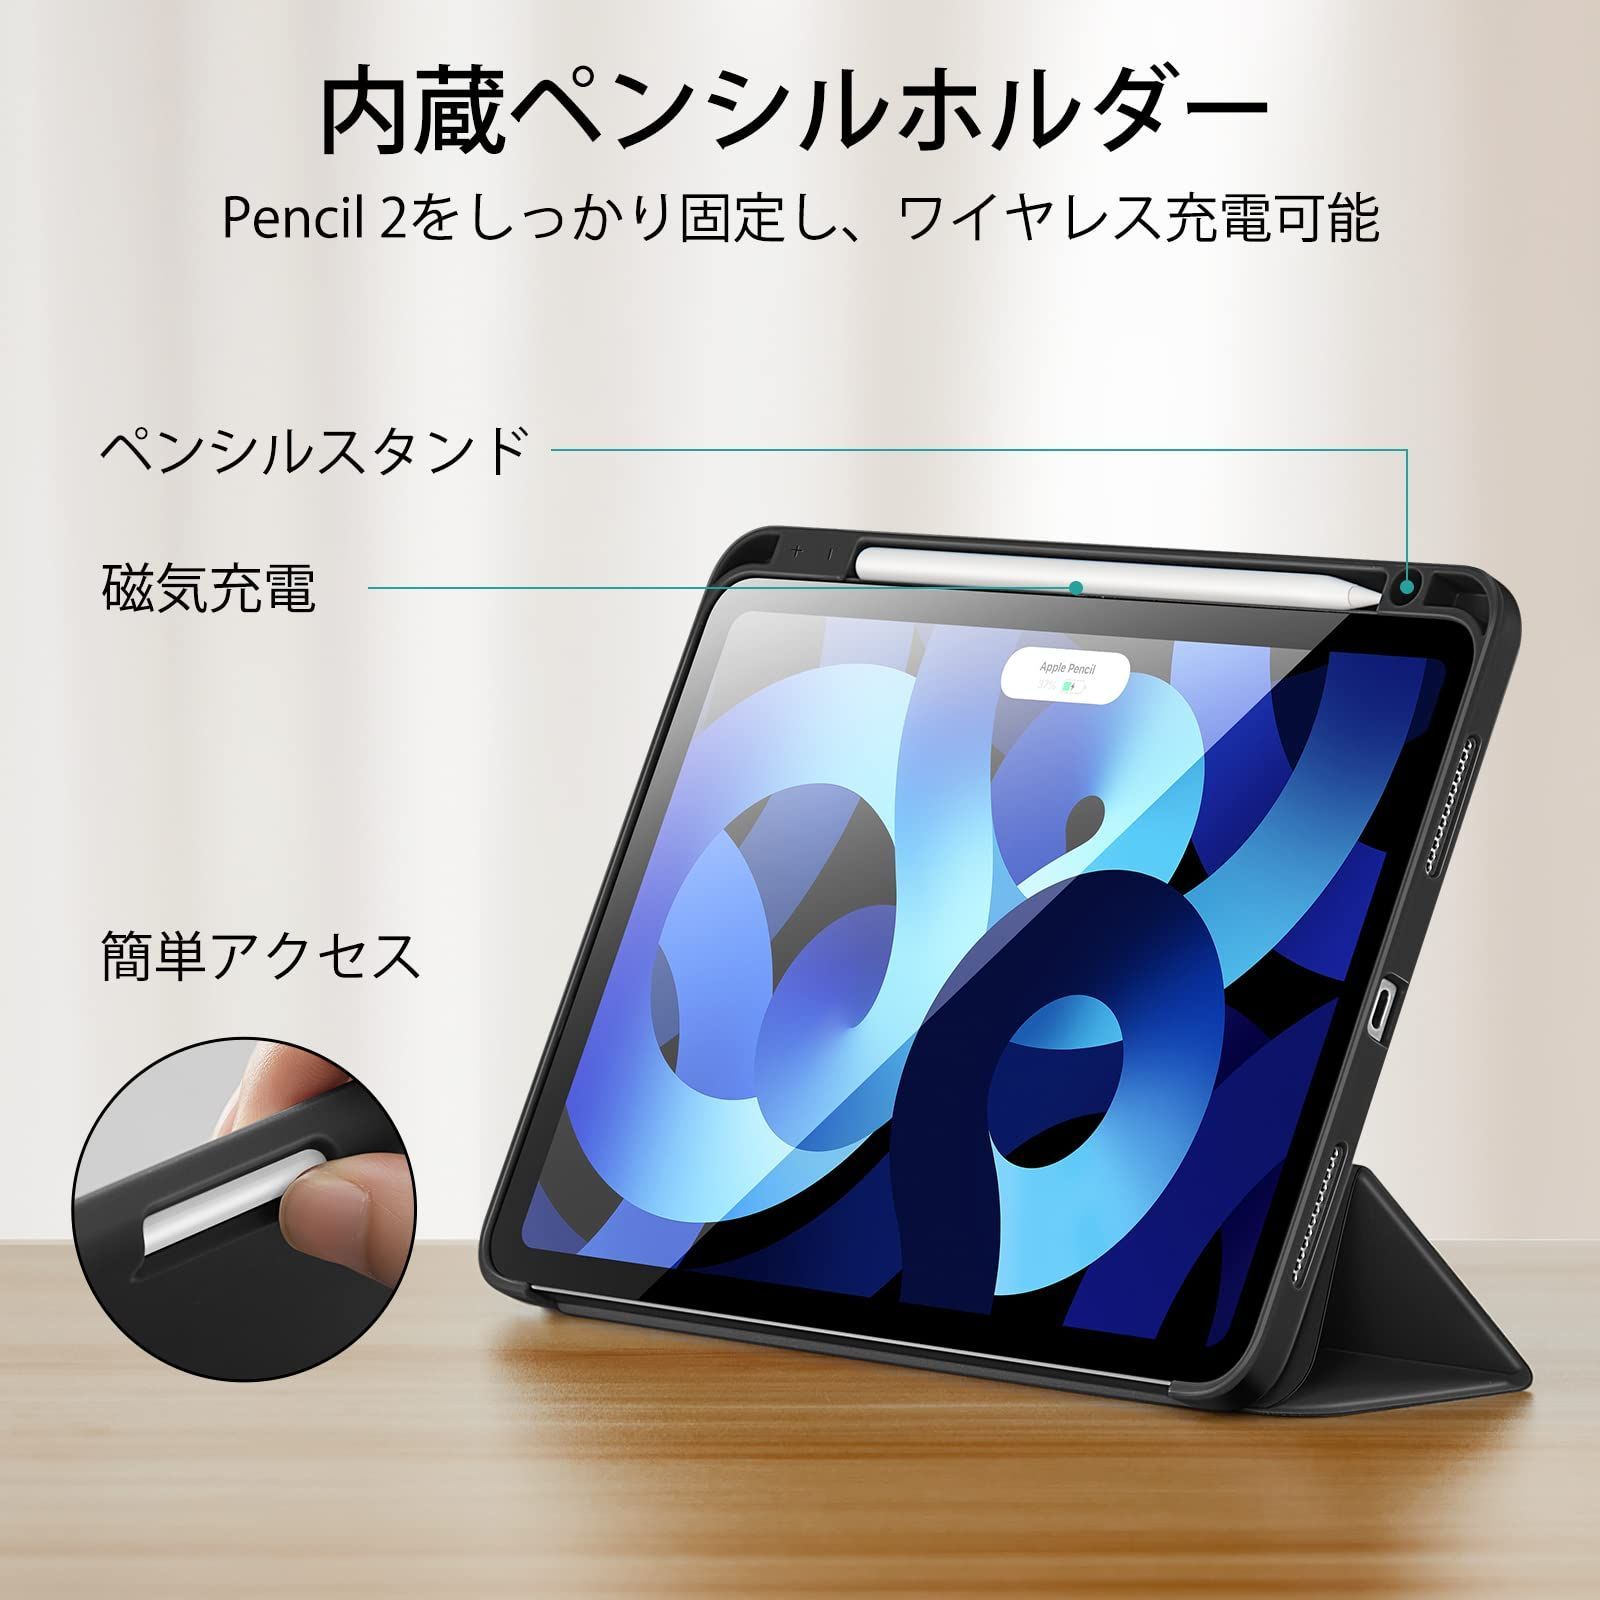 セール公式店 iPad Air 第4世代 カバー Apple Pencil2世代 hipomoto.com